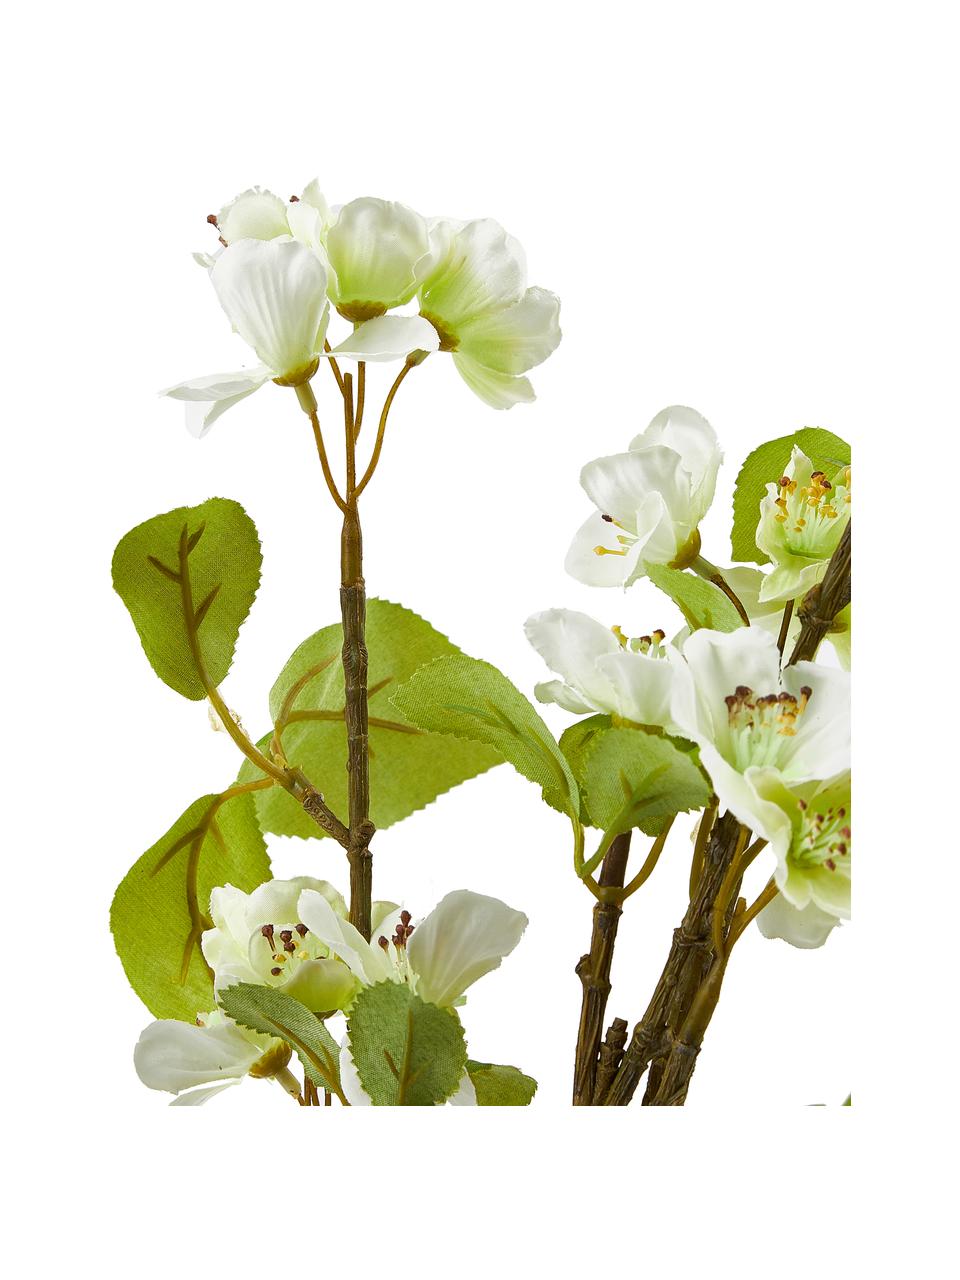 Plante artificielle en pot Fleur de cerisier, Plastique, Vert, blanc, brun, haut. 89 cm